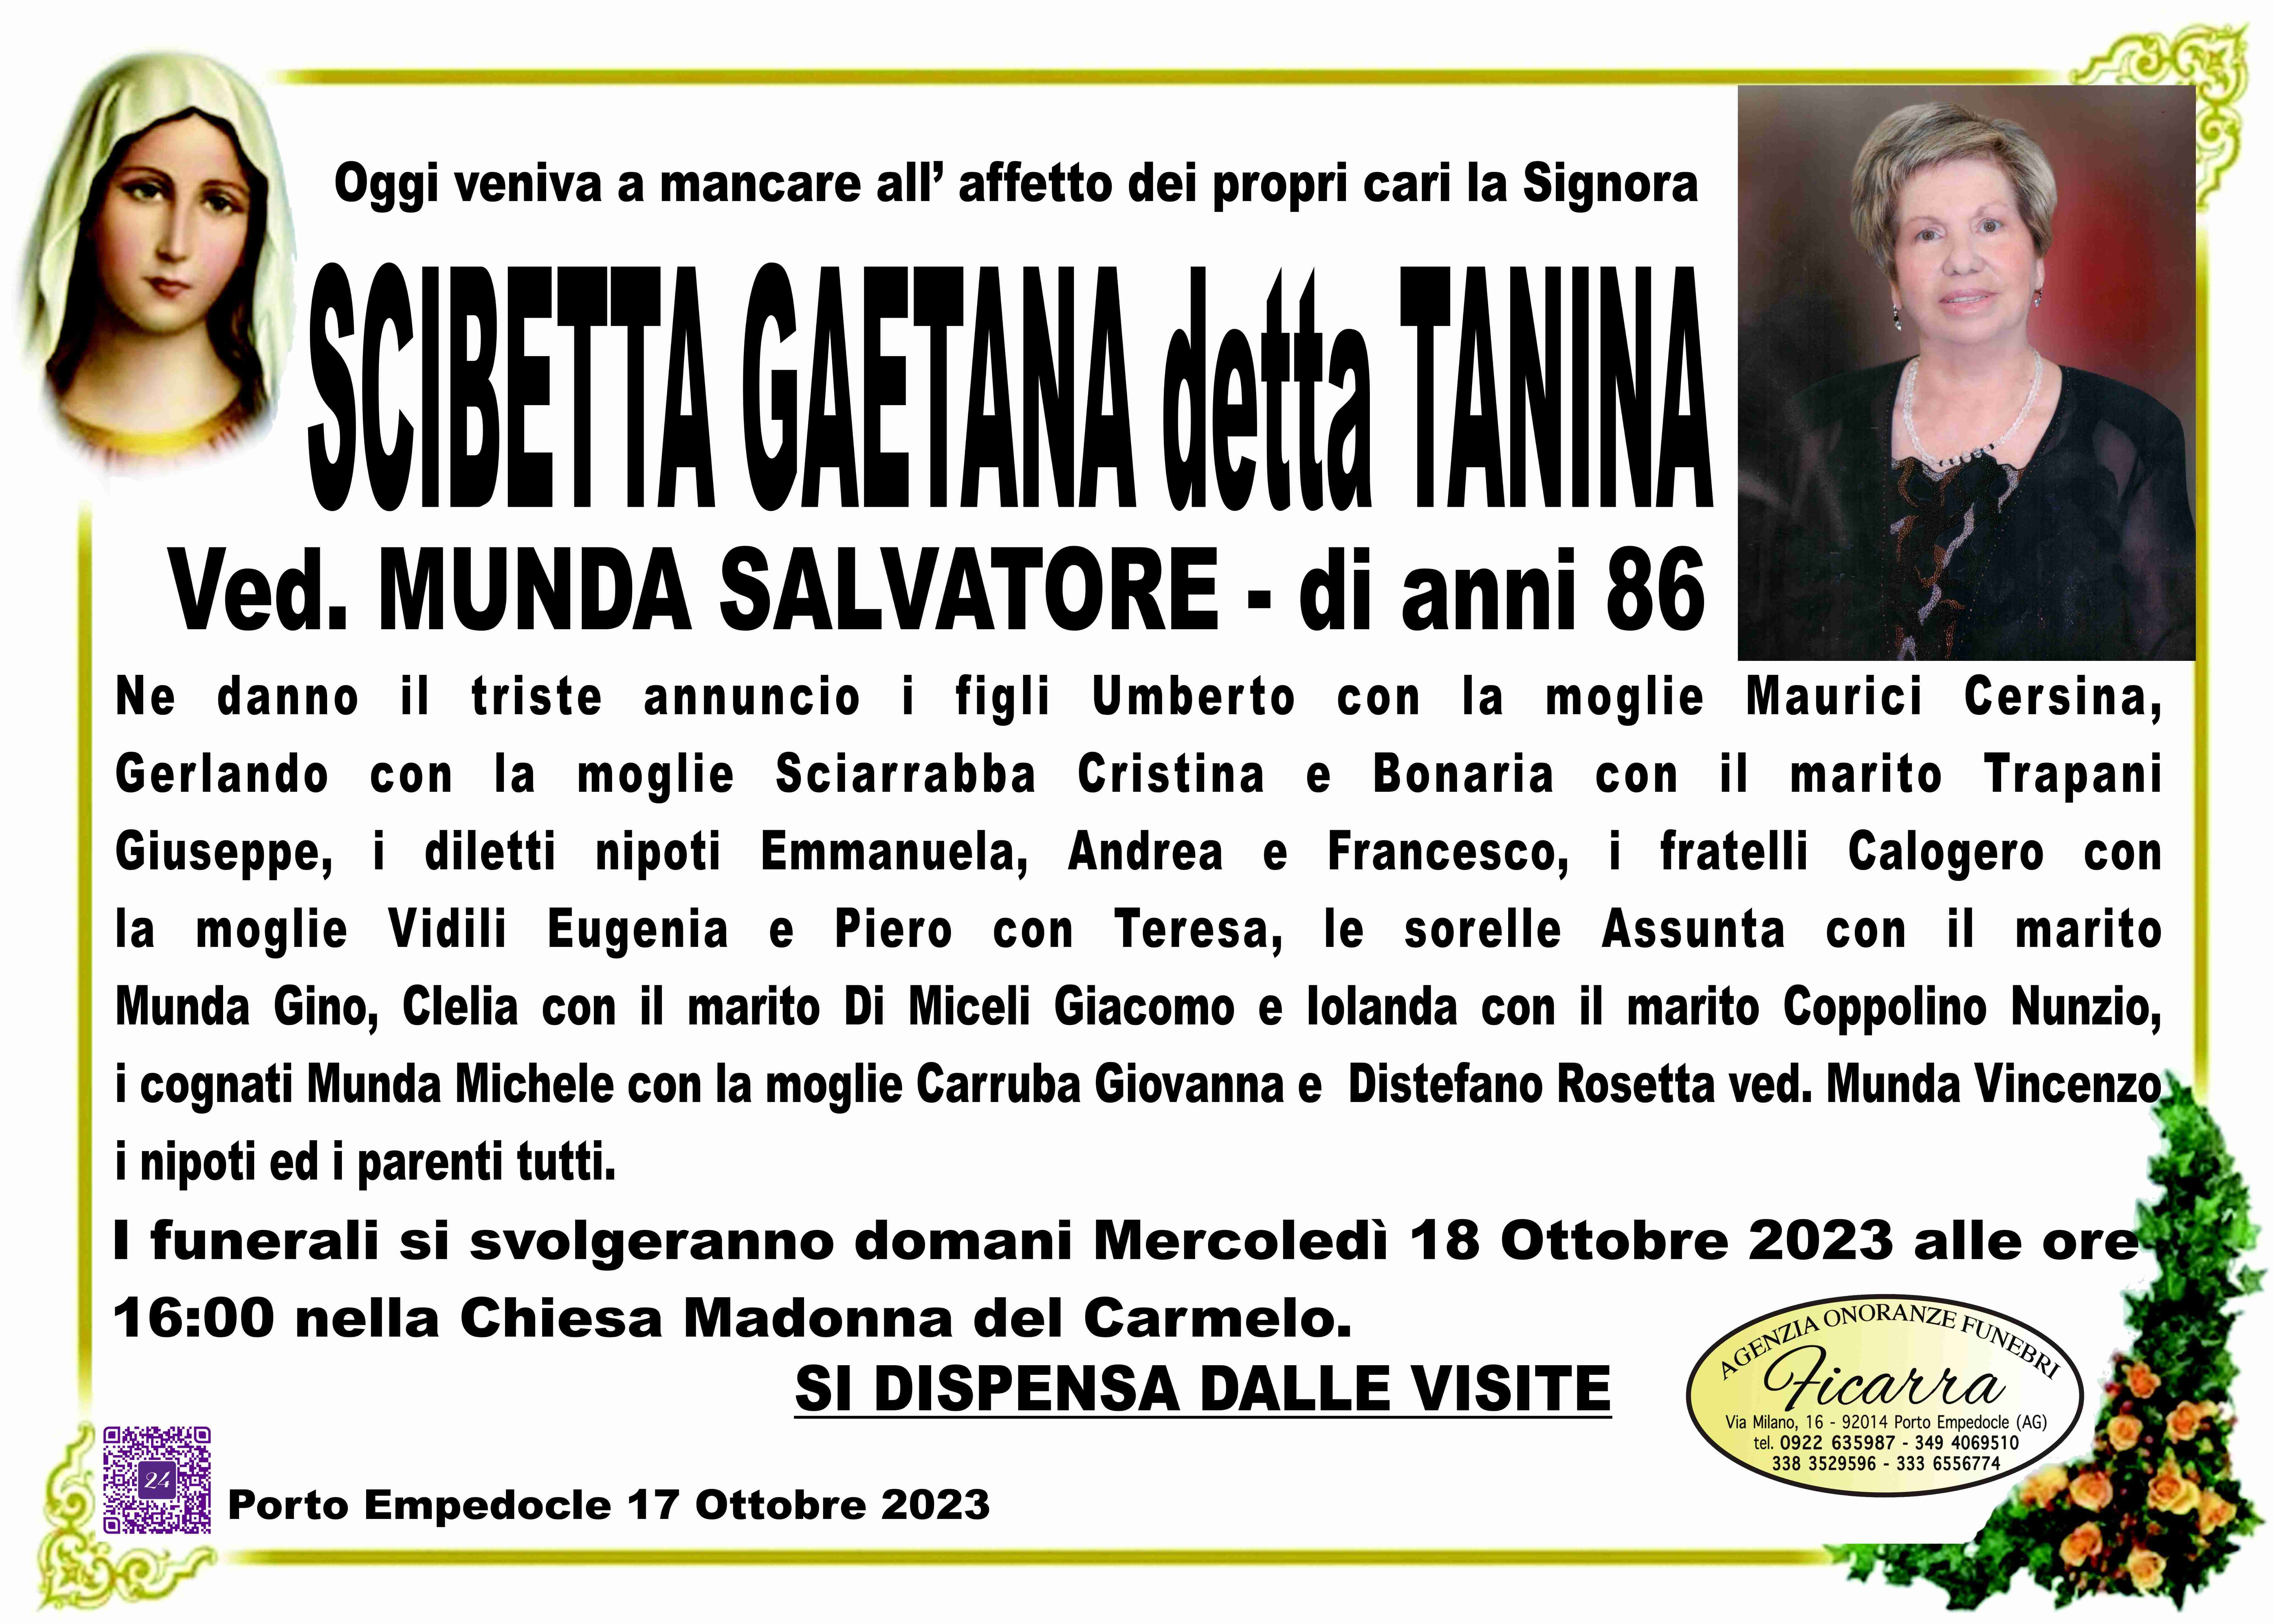 Gaetana Scibetta